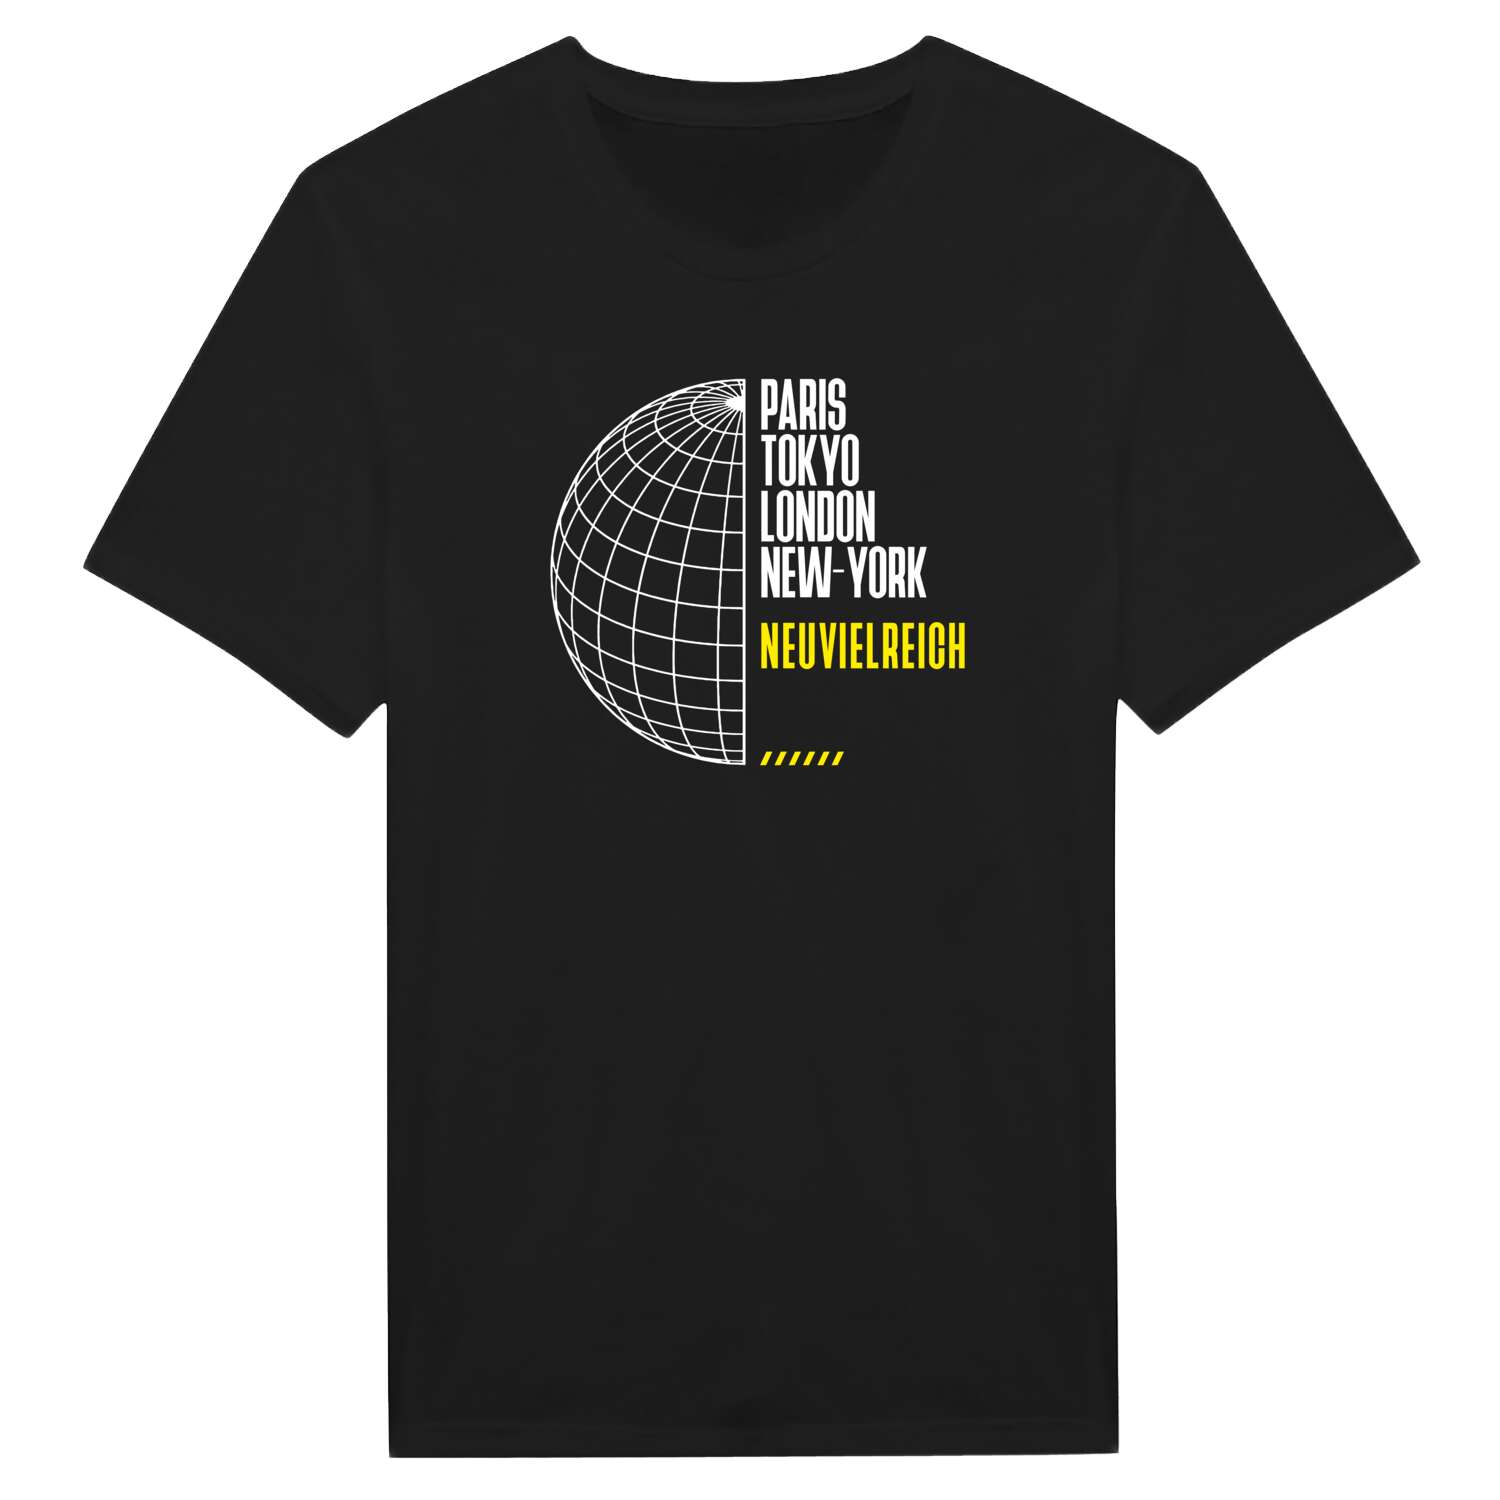 Neuvielreich T-Shirt »Paris Tokyo London«